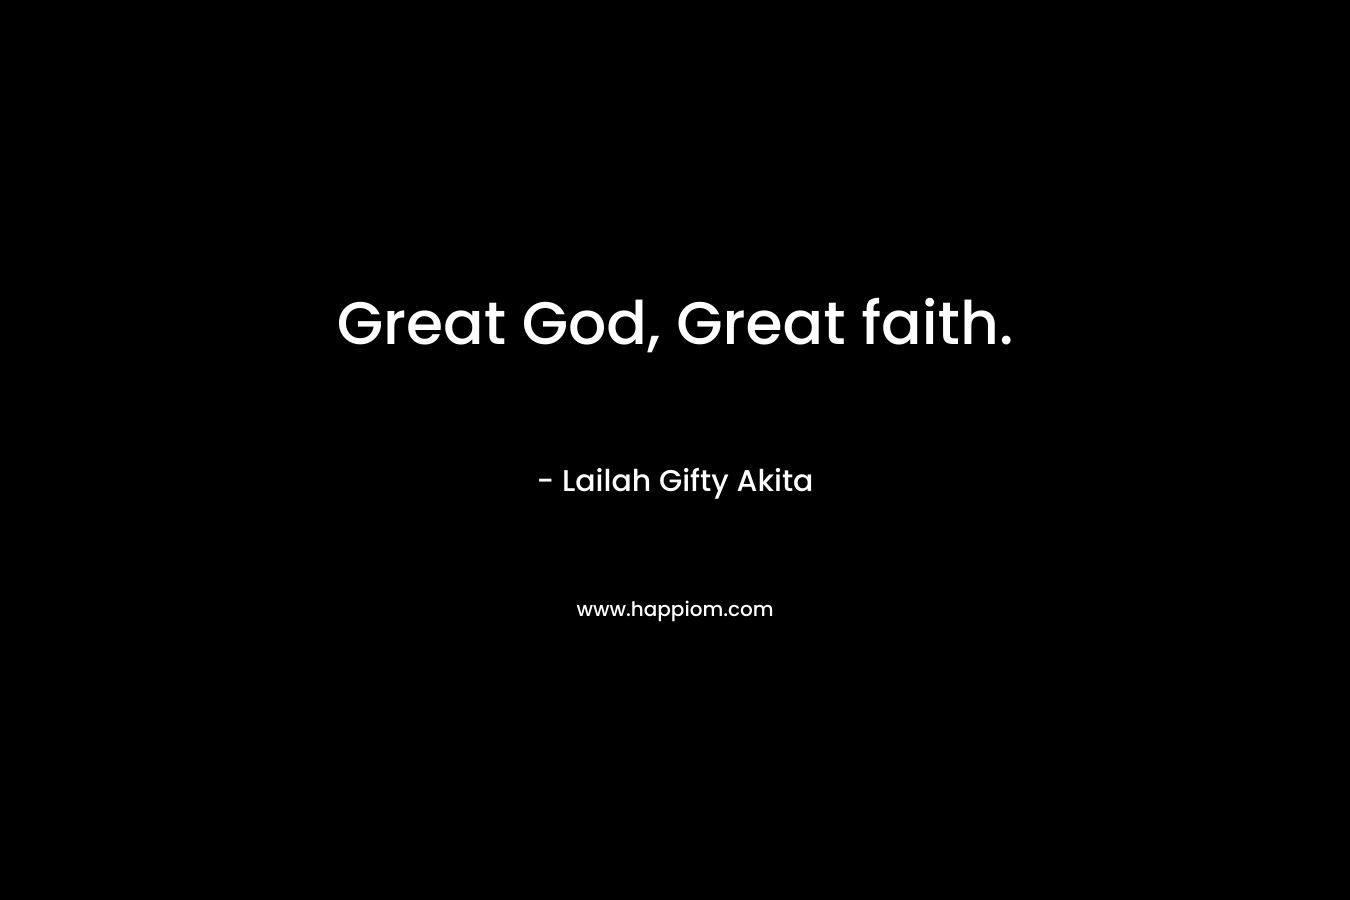 Great God, Great faith.